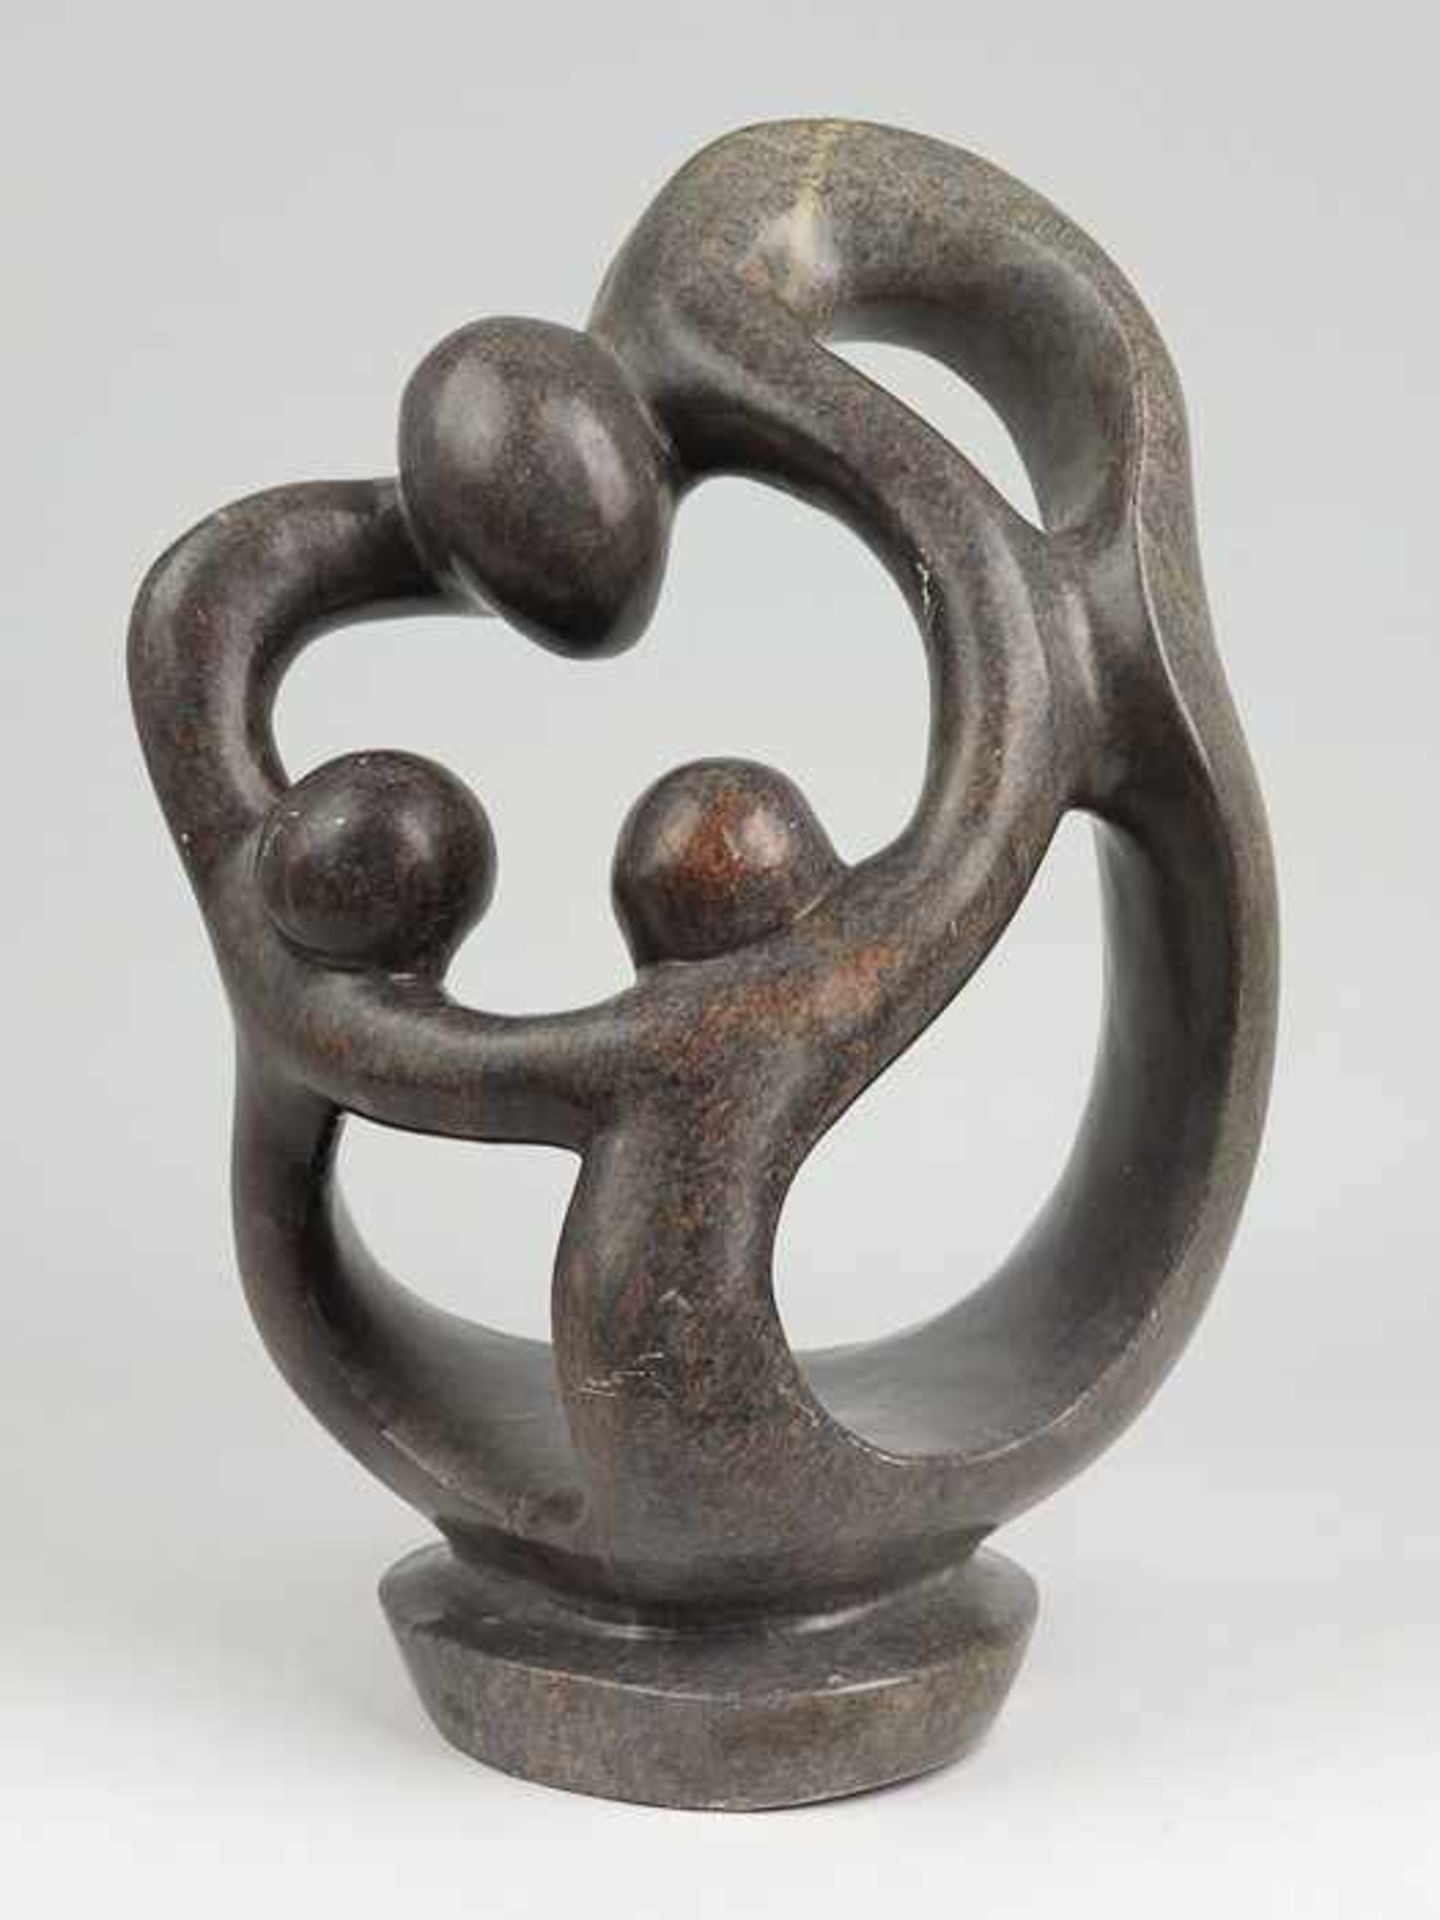 Shona-Skulptur20.Jh., Simbabwe, wohl Serpentinit, vollplastische Figurengruppe v. drei miteinander